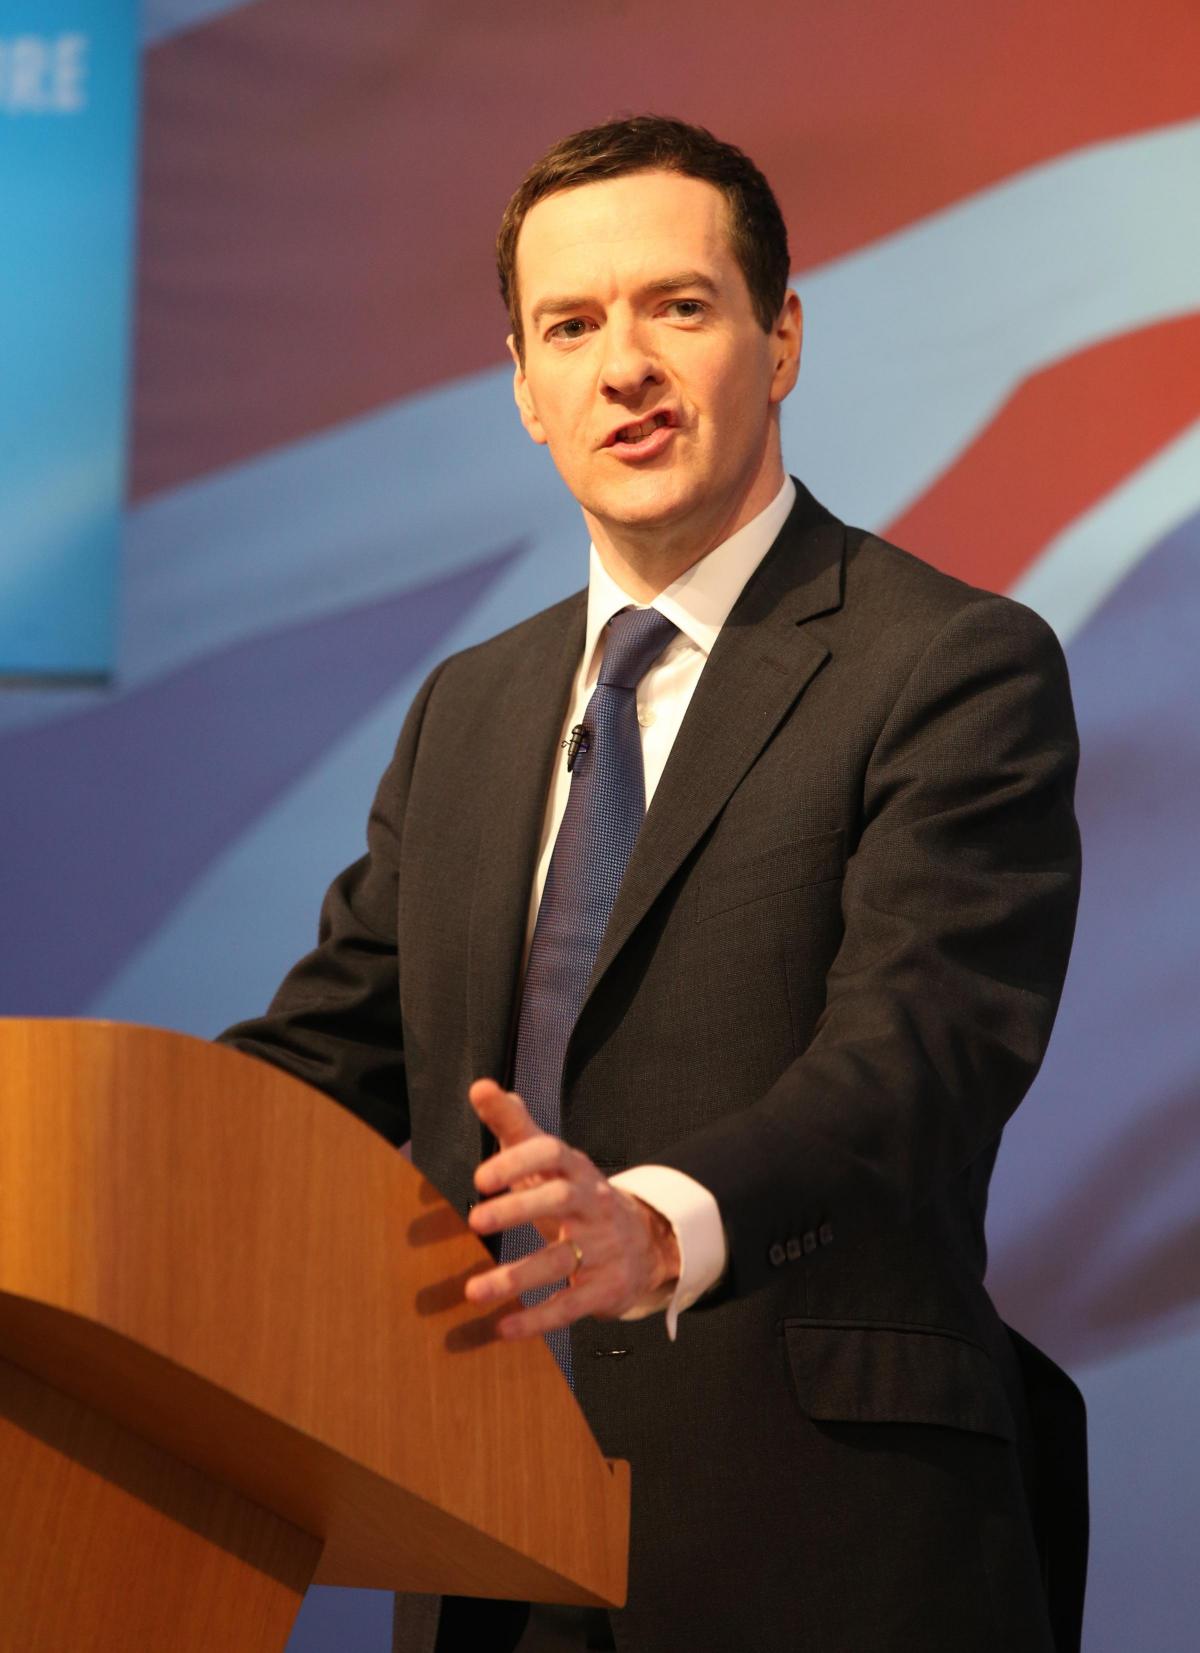 Prime Minister David Cameron in Swindon